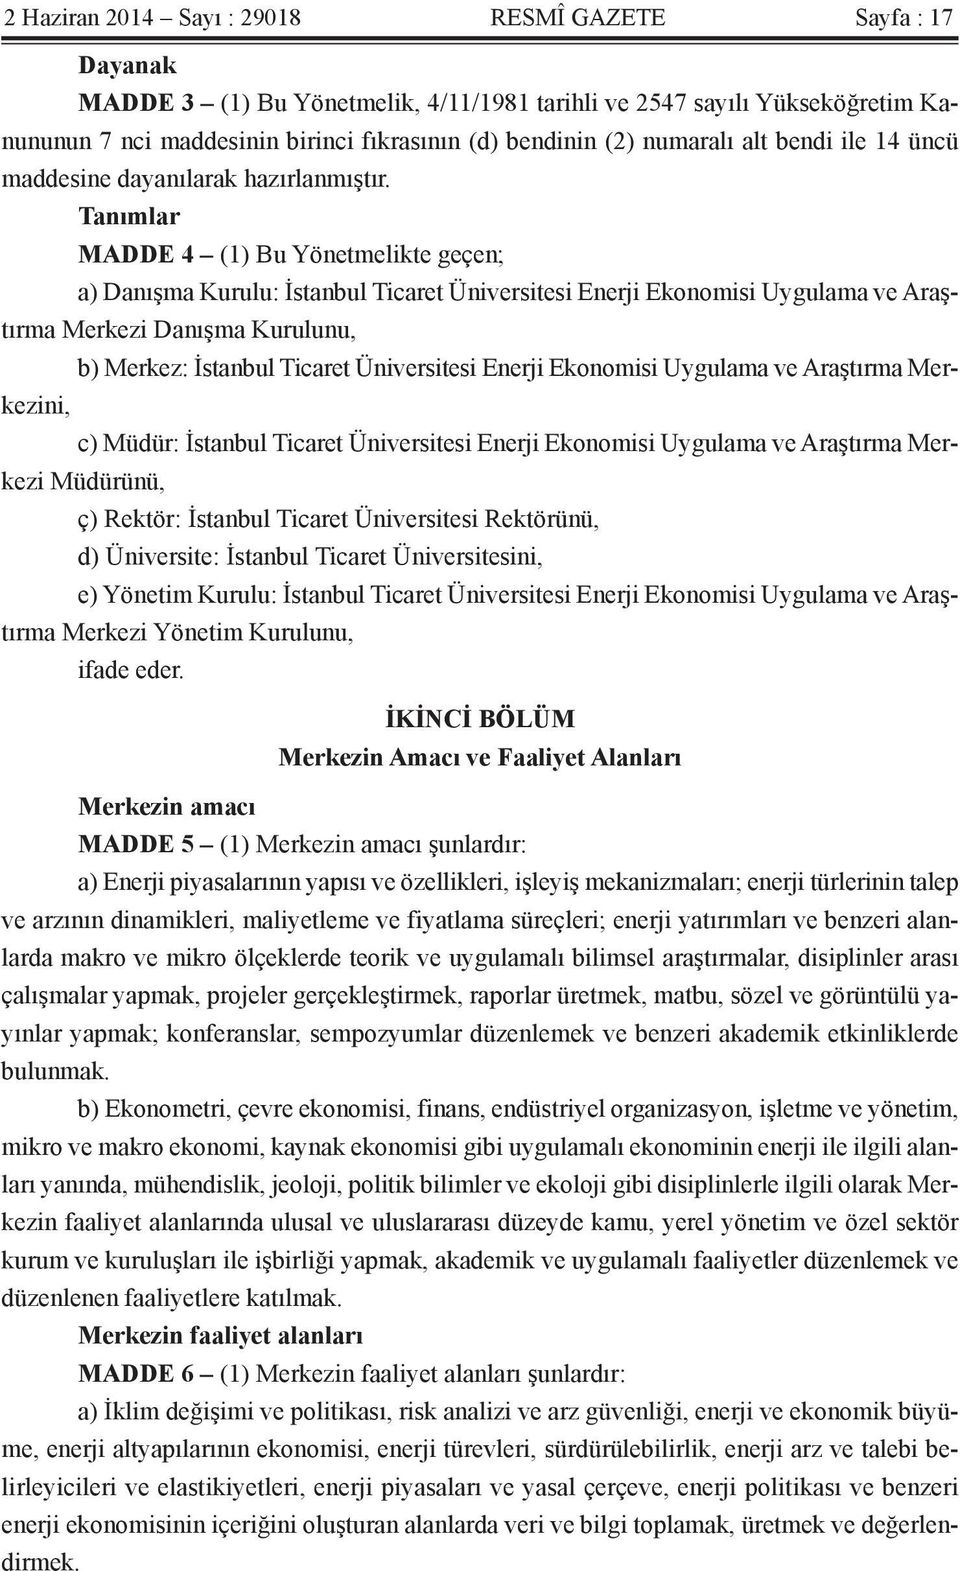 Tanımlar MADDE 4 (1) Bu Yönetmelikte geçen; a) Danışma Kurulu: İstanbul Ticaret Üniversitesi Enerji Ekonomisi Uygulama ve Araştırma Merkezi Danışma Kurulunu, b) Merkez: İstanbul Ticaret Üniversitesi